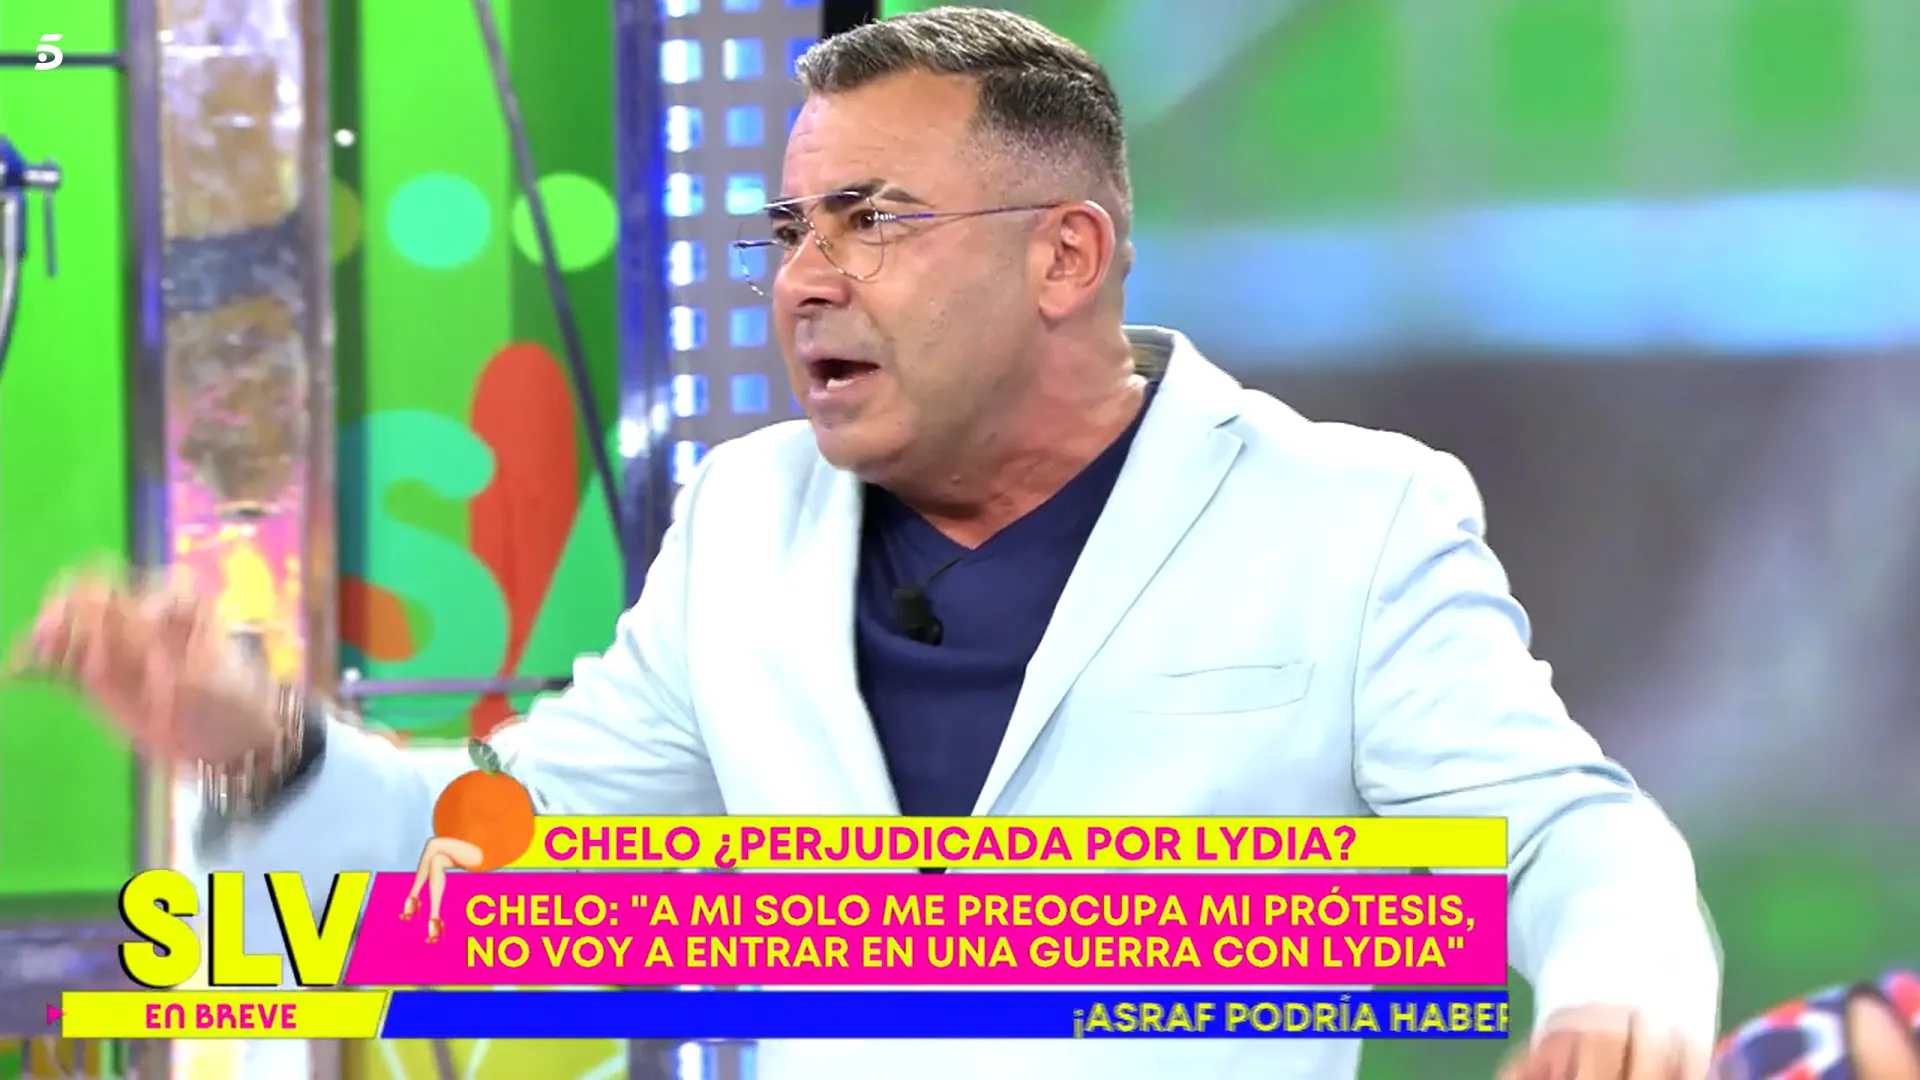 Jorge Javier ha explotado contra Chelo tras escucharla (Telecinco)